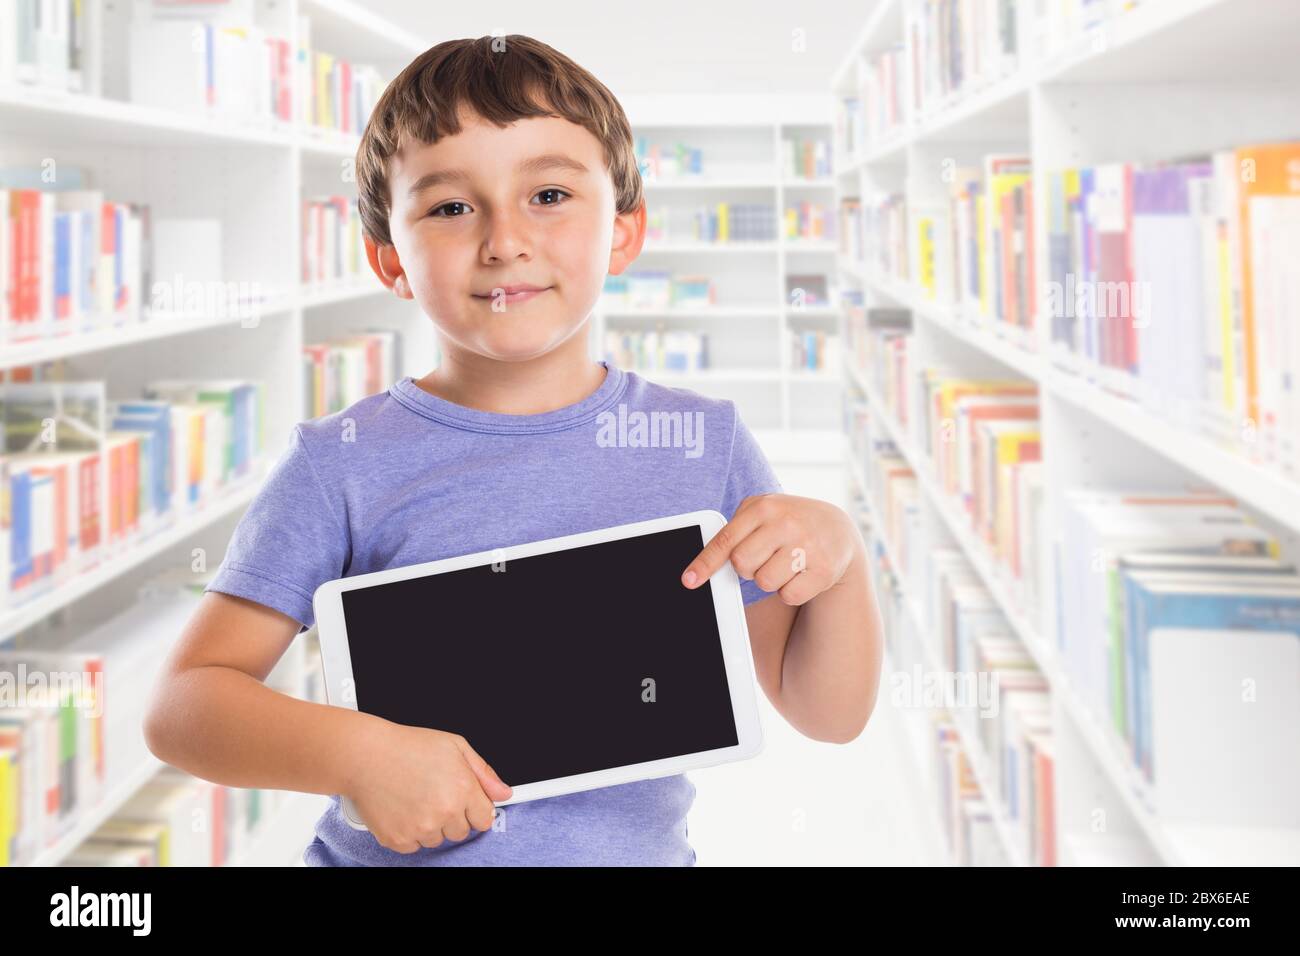 Junge Kind zeigt auf Tablet-Computer-Bibliothek Informationen Marketing-Anzeige Werbung lernen Stockfoto